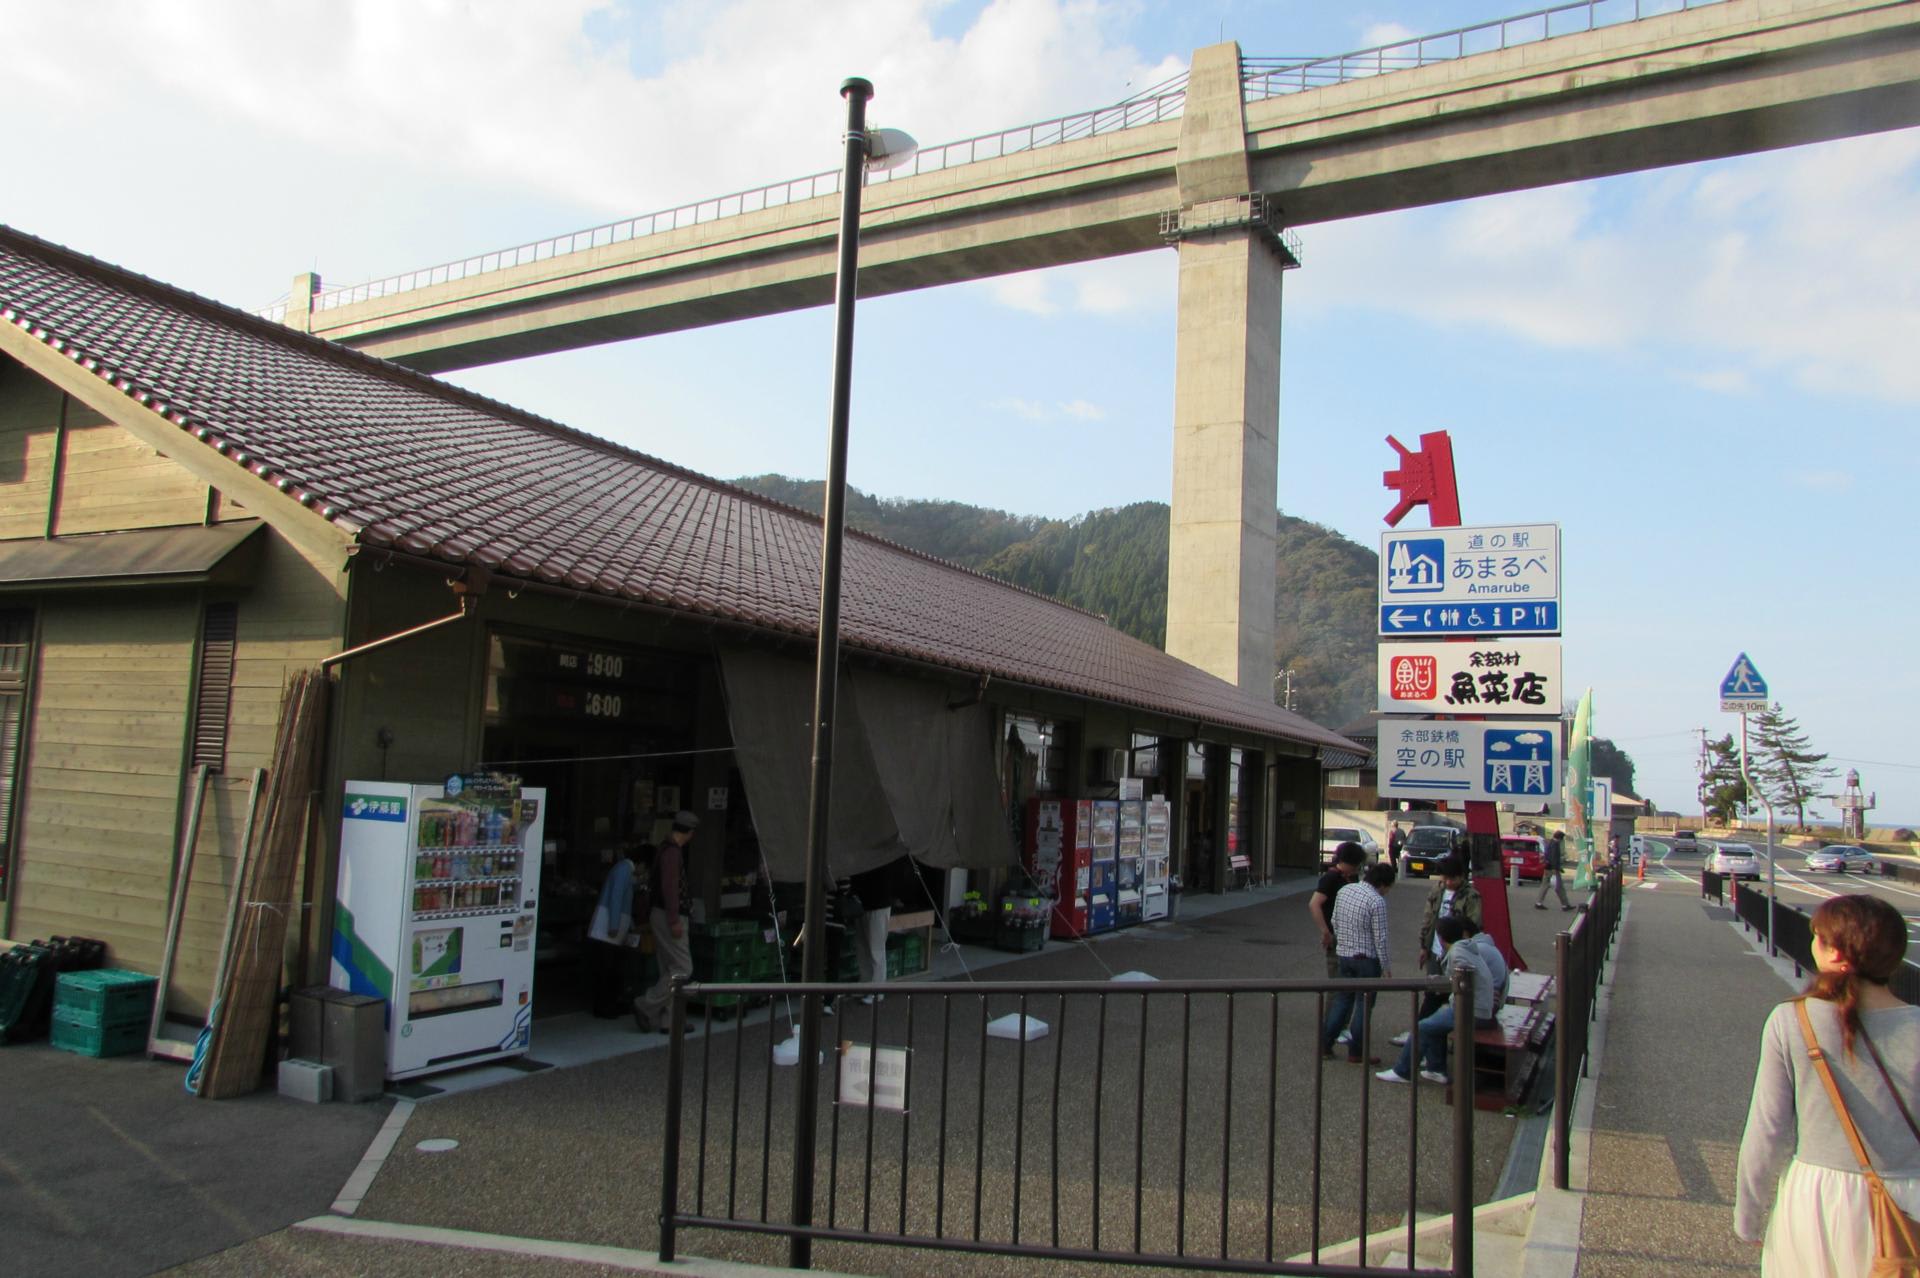 道の駅 あまるべと城崎町の海の駅 旅行 写真で紹介